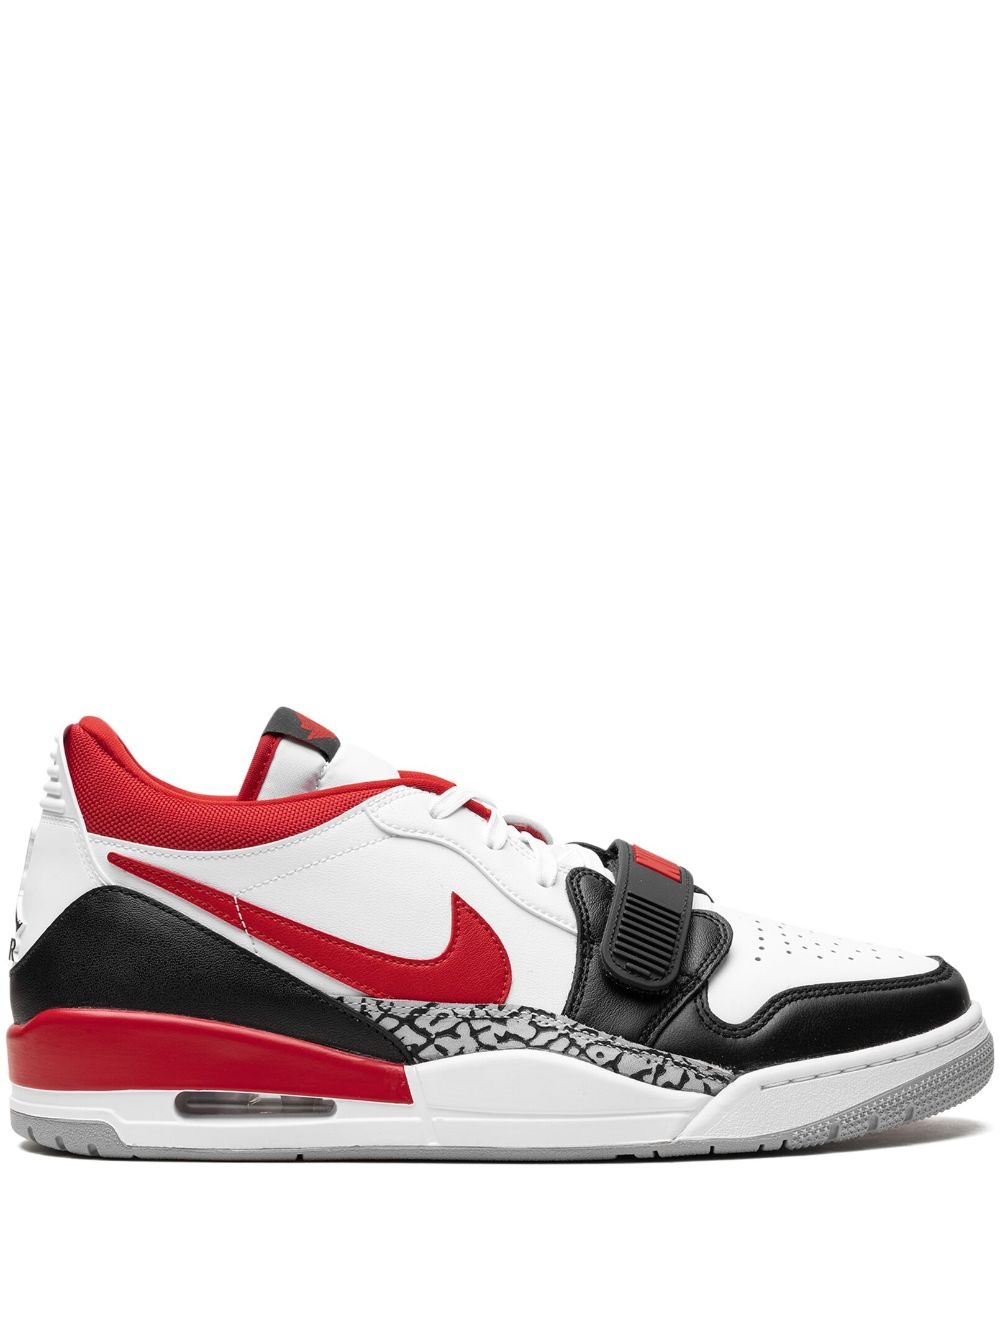 Air Jordan Legacy 312 Low "Fire Red" sneakers - 1